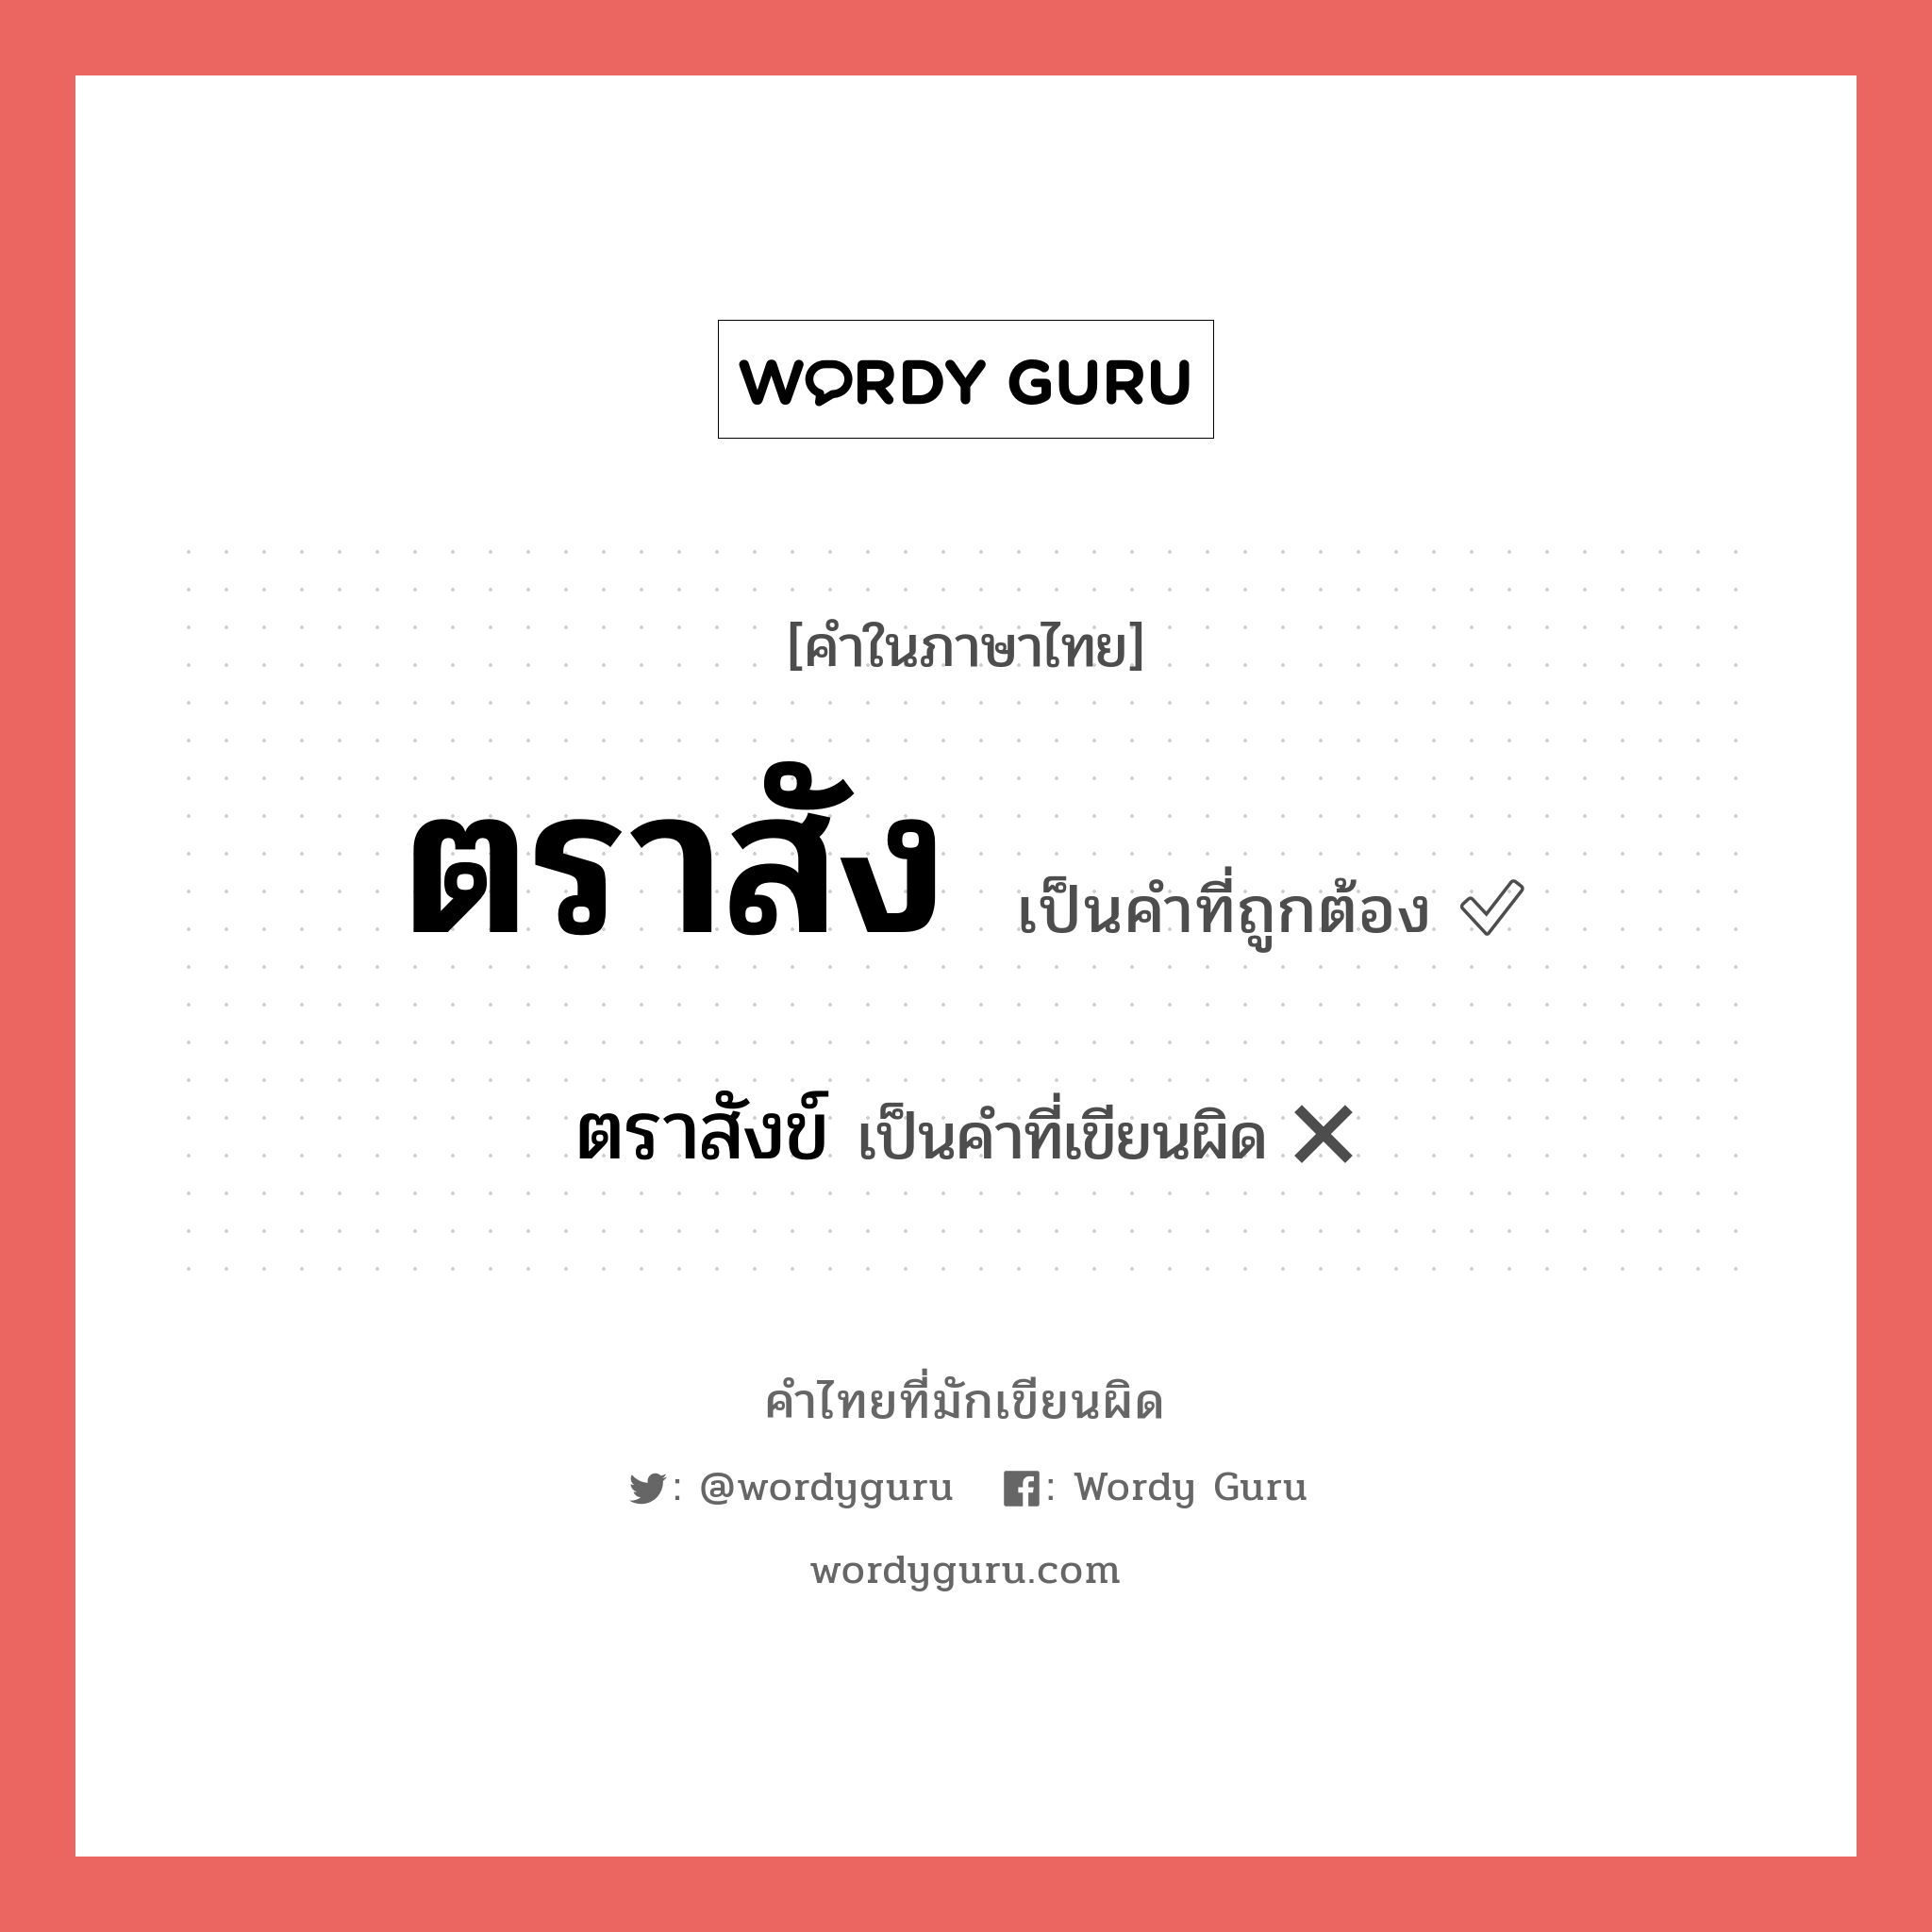 ตราสัง หรือ ตราสังข์ เขียนยังไง? คำไหนเขียนถูก?, คำในภาษาไทยที่มักเขียนผิด ตราสัง คำที่ผิด ❌ ตราสังข์